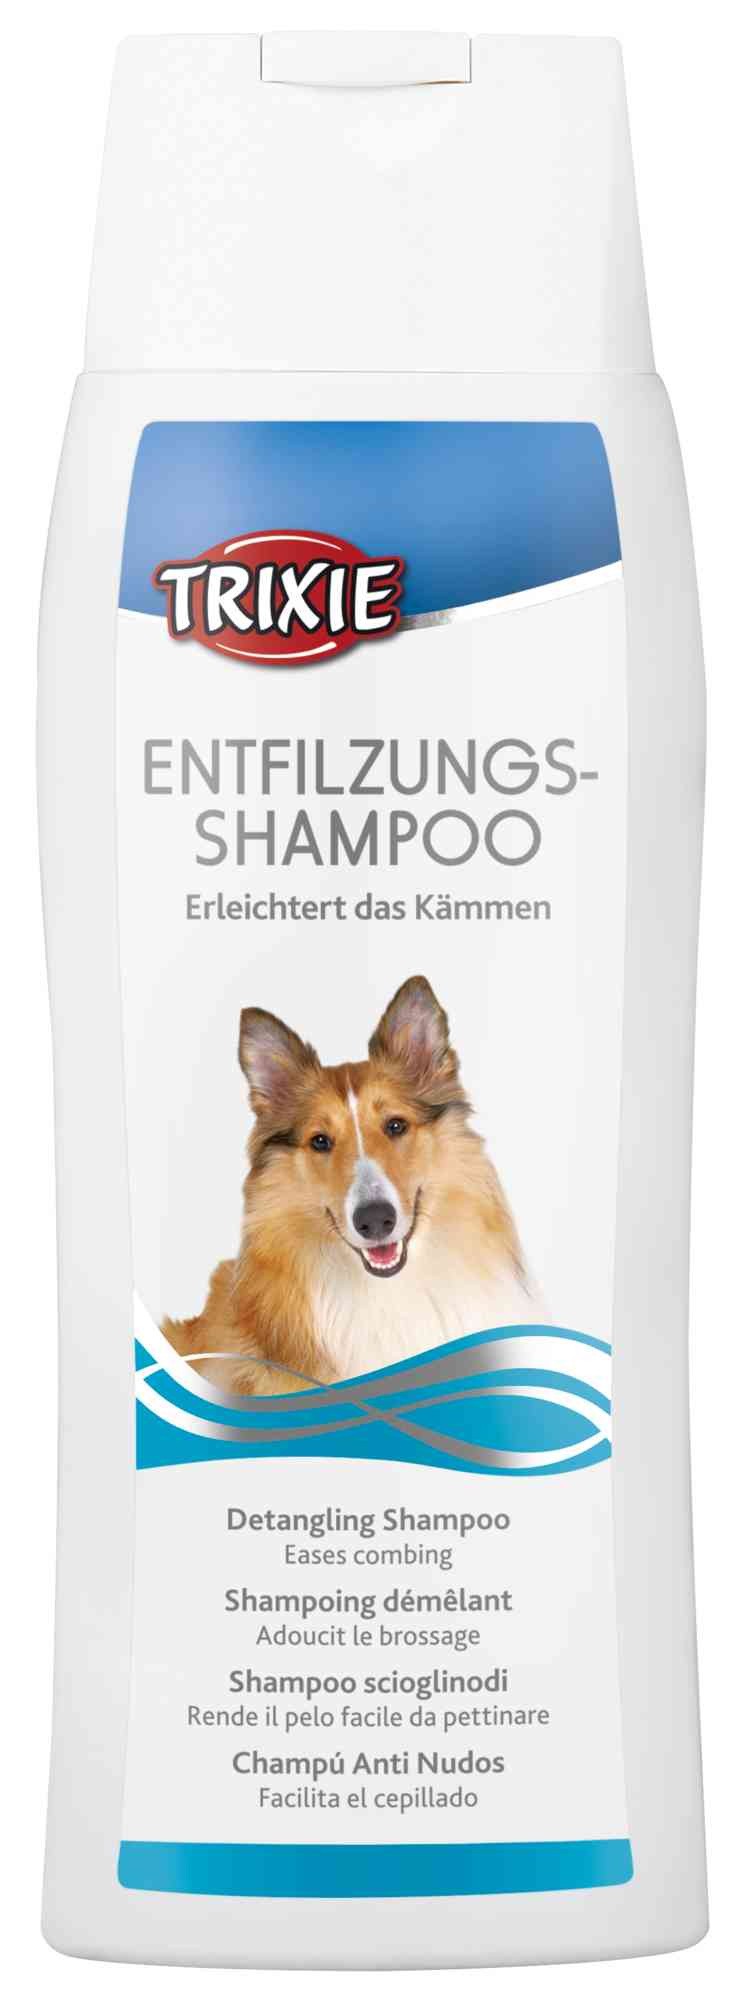 Anti-Klit Shampoo 250ml voor de hond